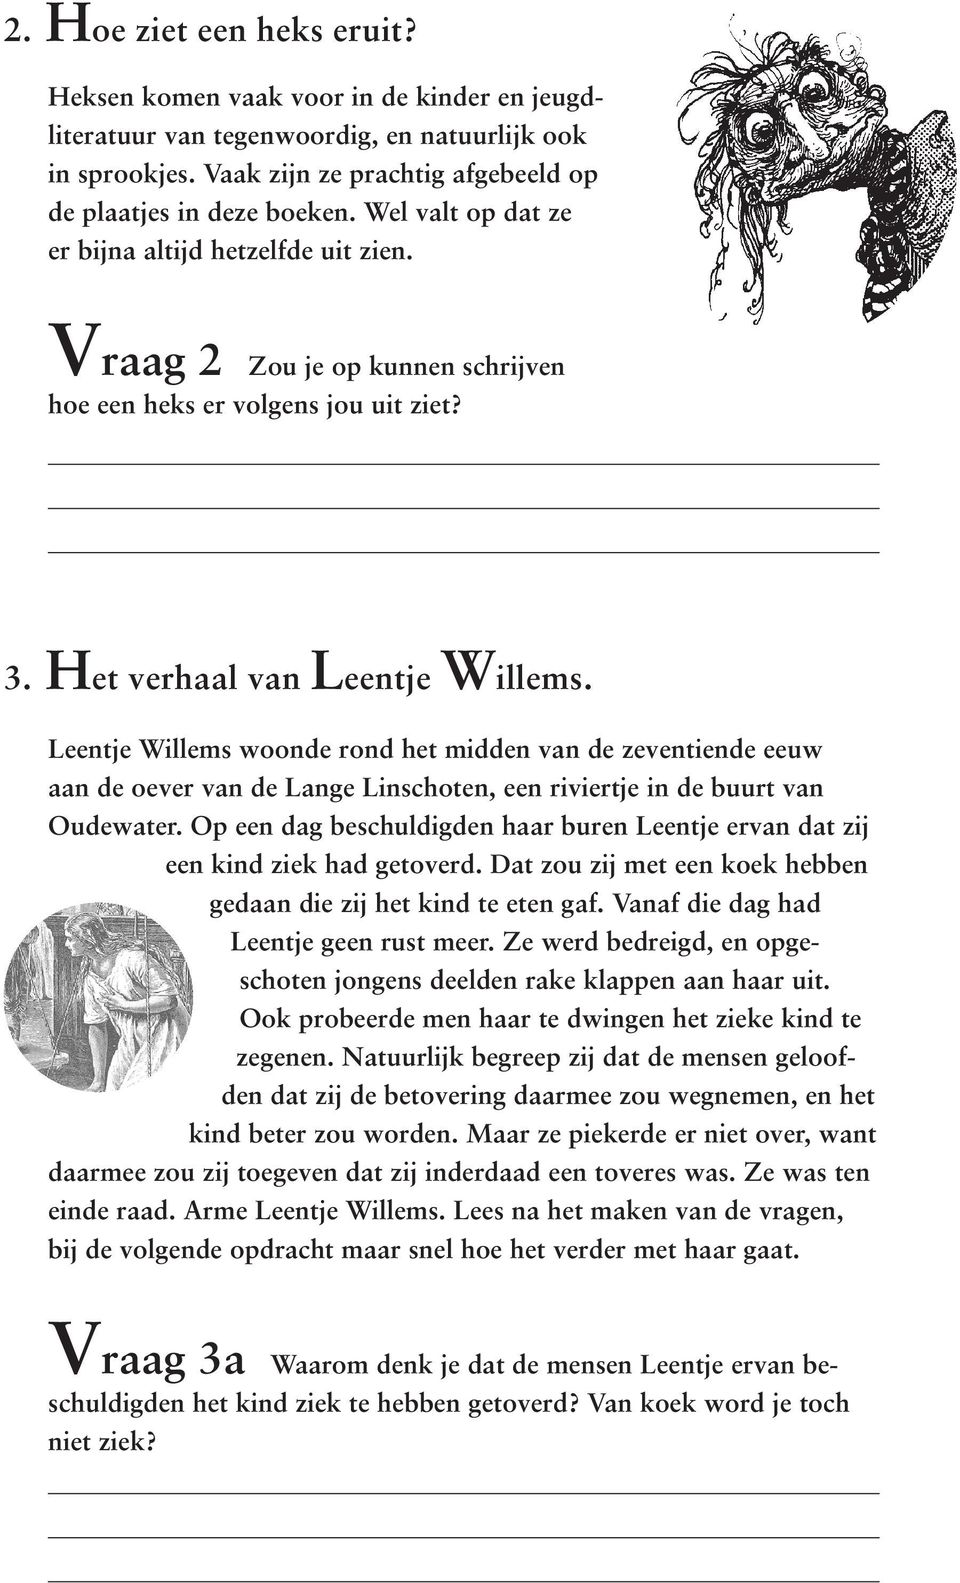 Leentje Willems woonde rond het midden van de zeventiende eeuw aan de oever van de Lange Linschoten, een riviertje in de buurt van Oudewater.